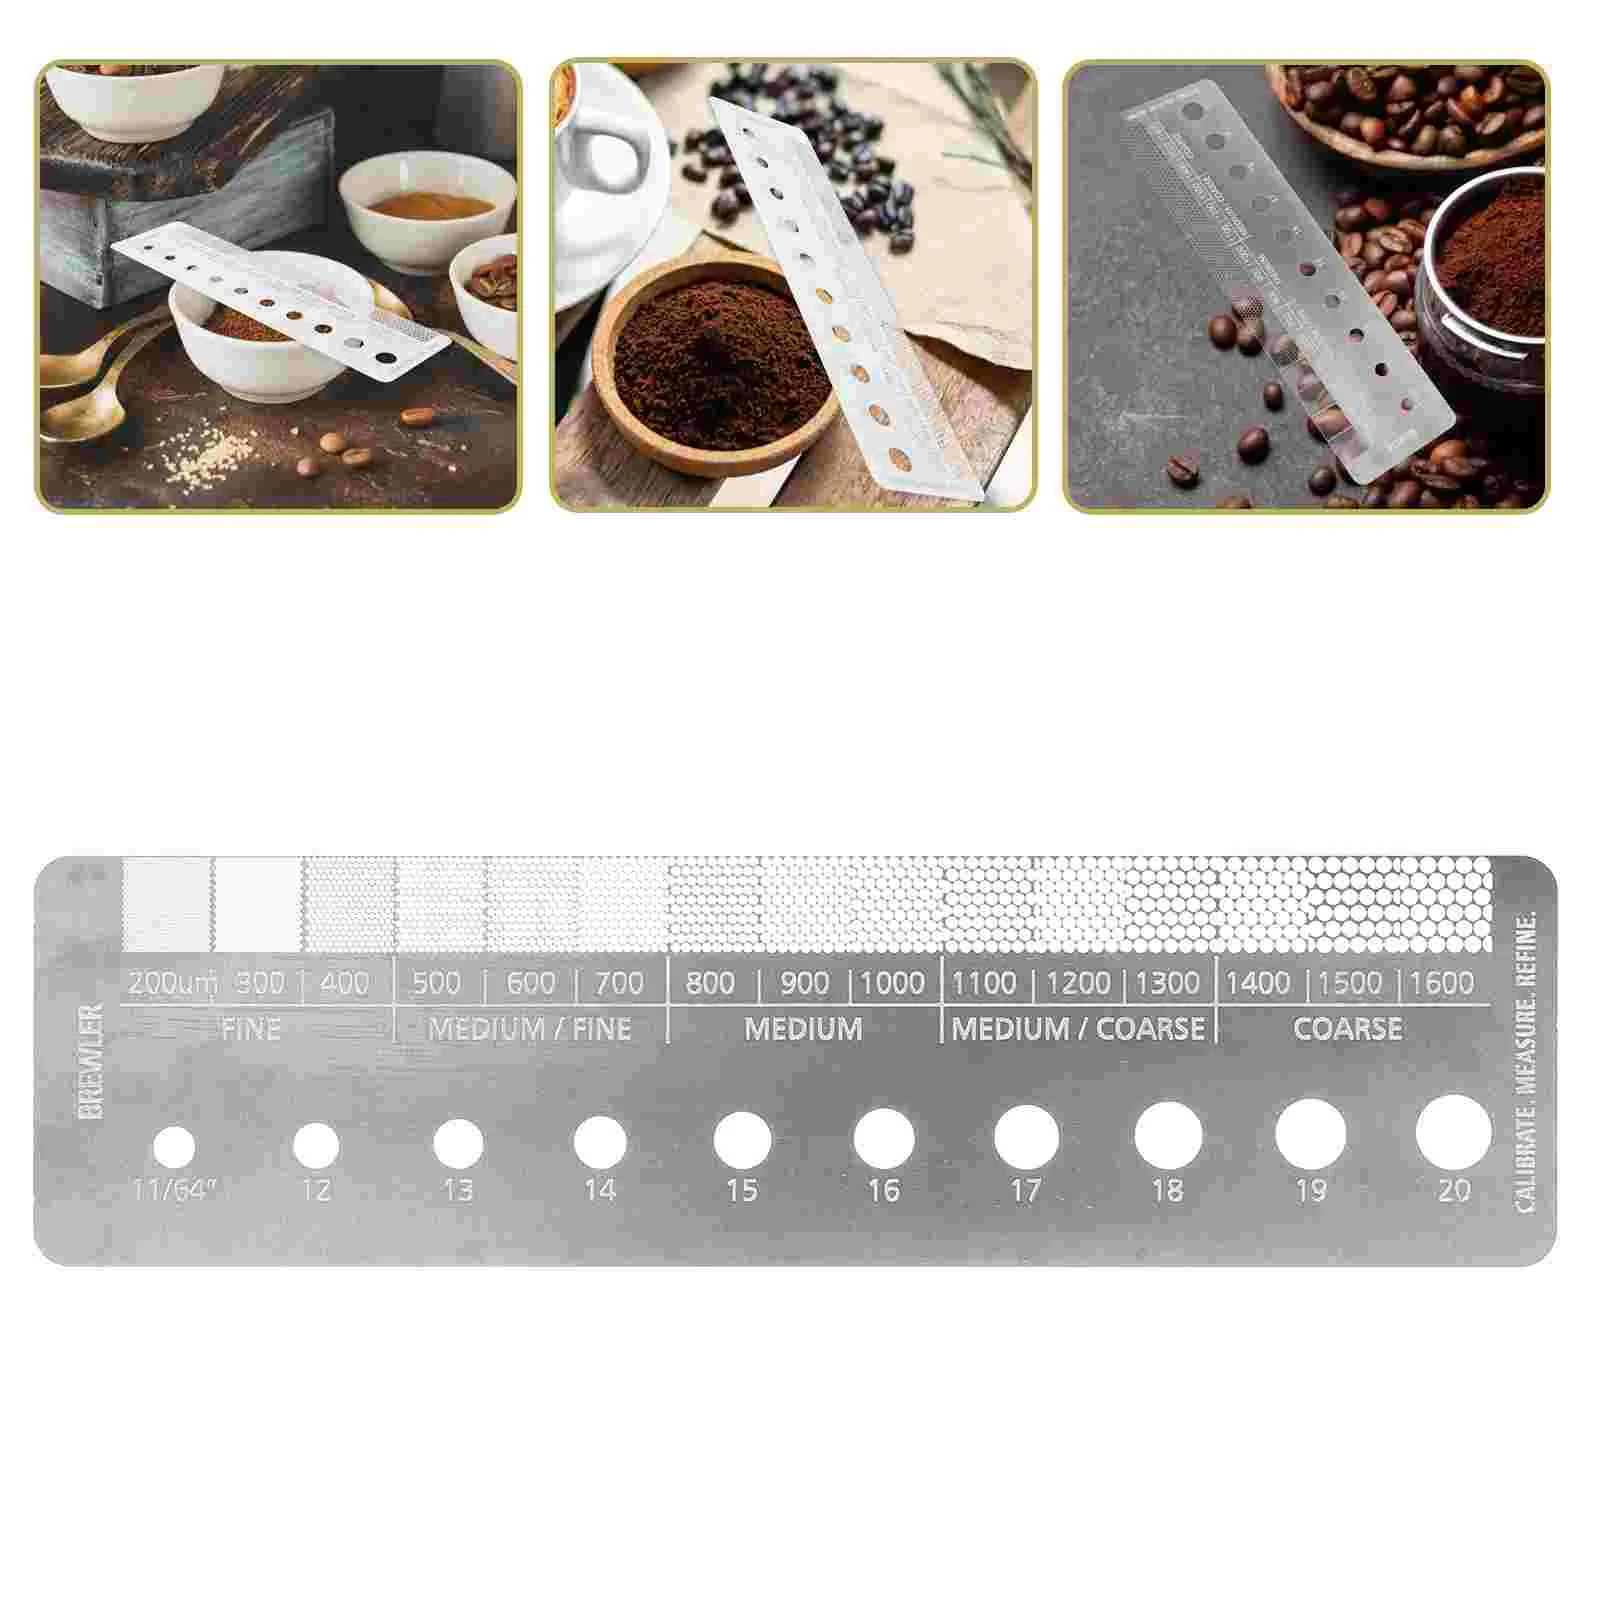 

Stainless Steel Coffee Grind Measure Measuring Tool For Coffee Grind Size Coffee Grind Size Ruler Coffee Bean Grinder Accessory